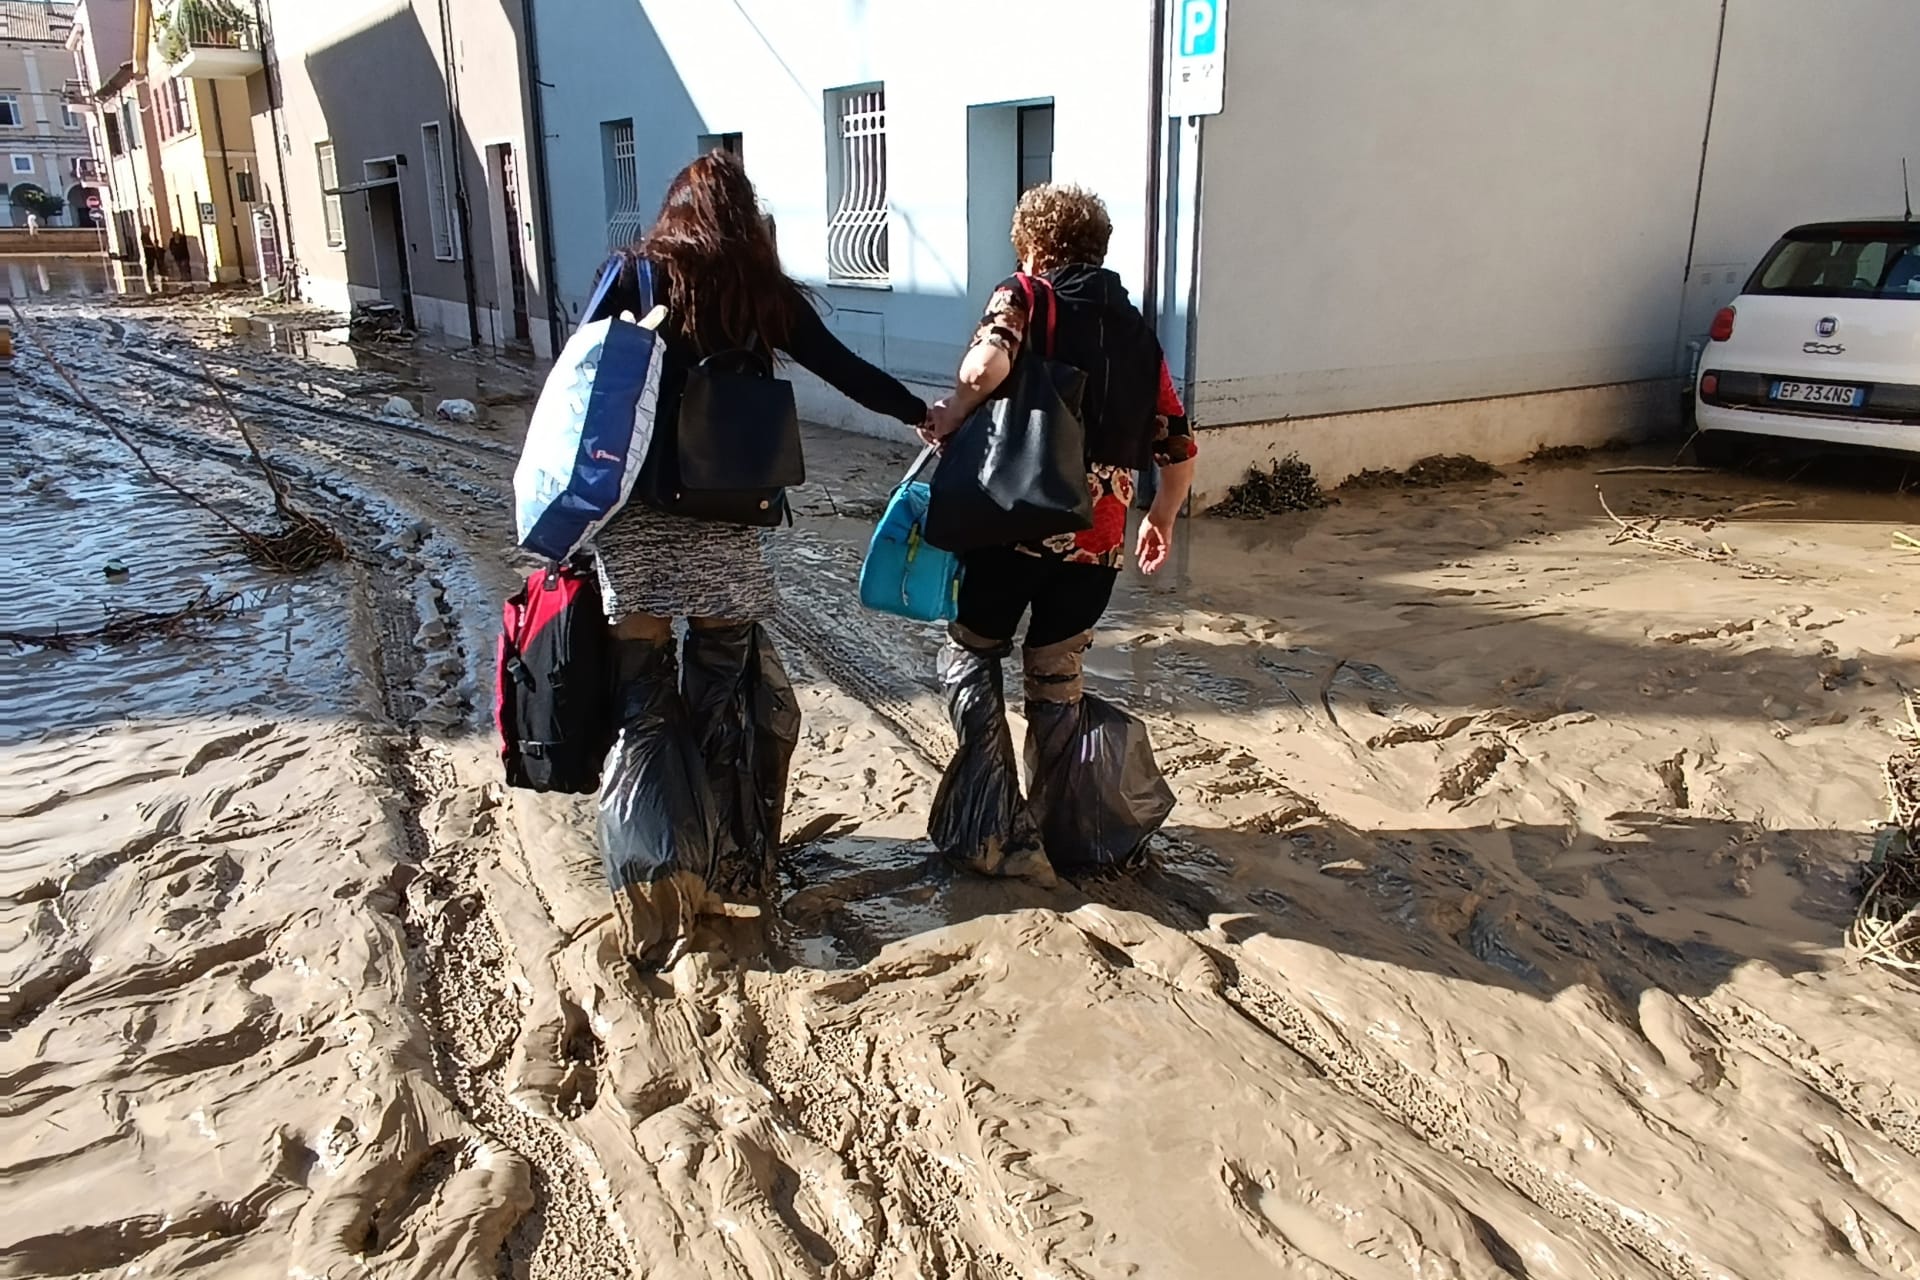 Záplavy ve střední Itálii (Senigallia, 16. 9. 2022)